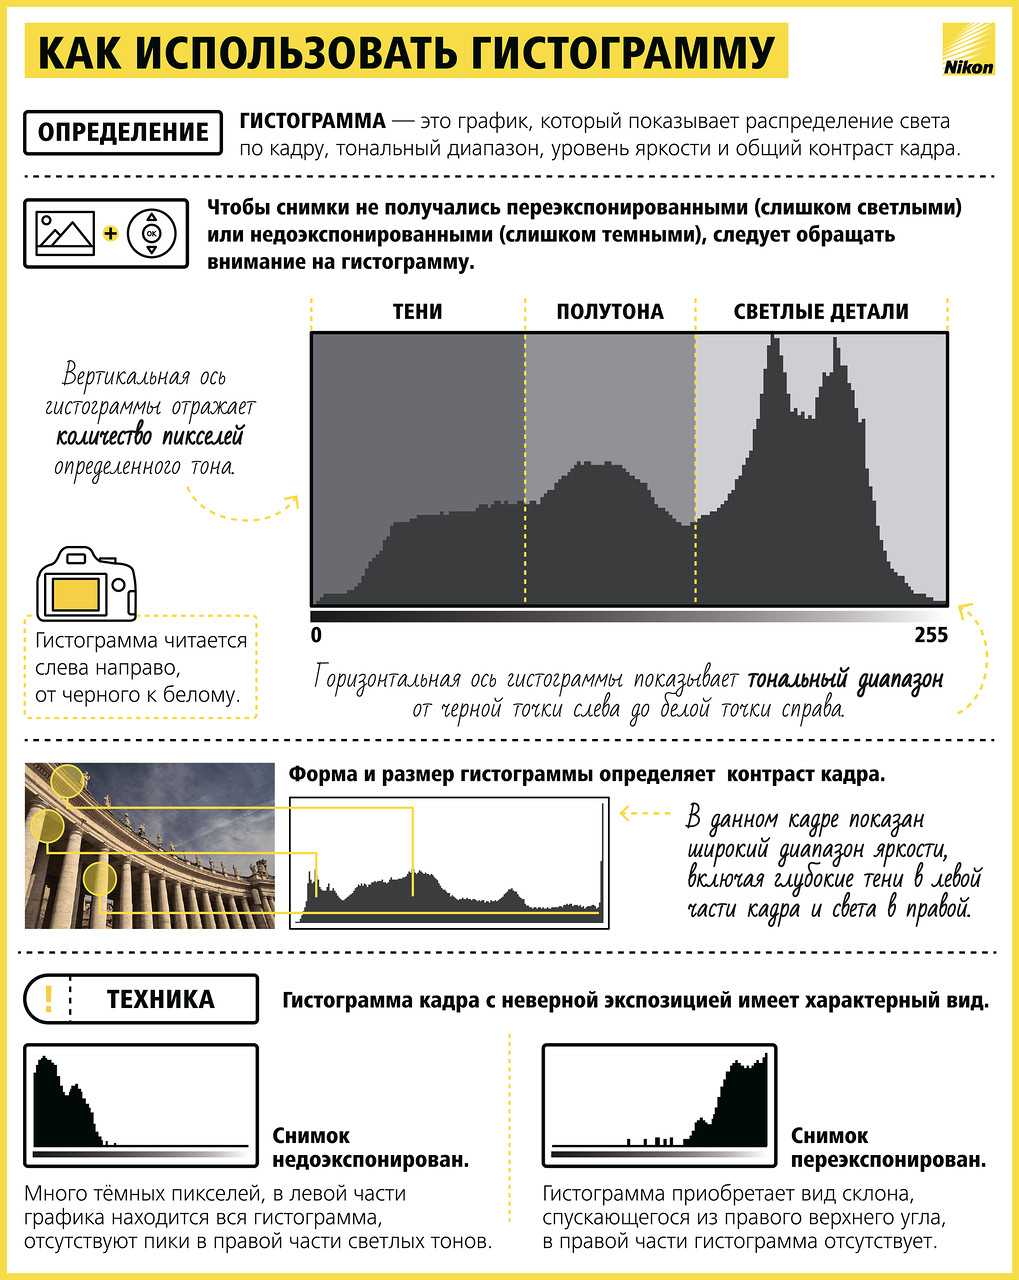 Яркость и контраст изображения - tele-kadr.ru - глазом и объективом